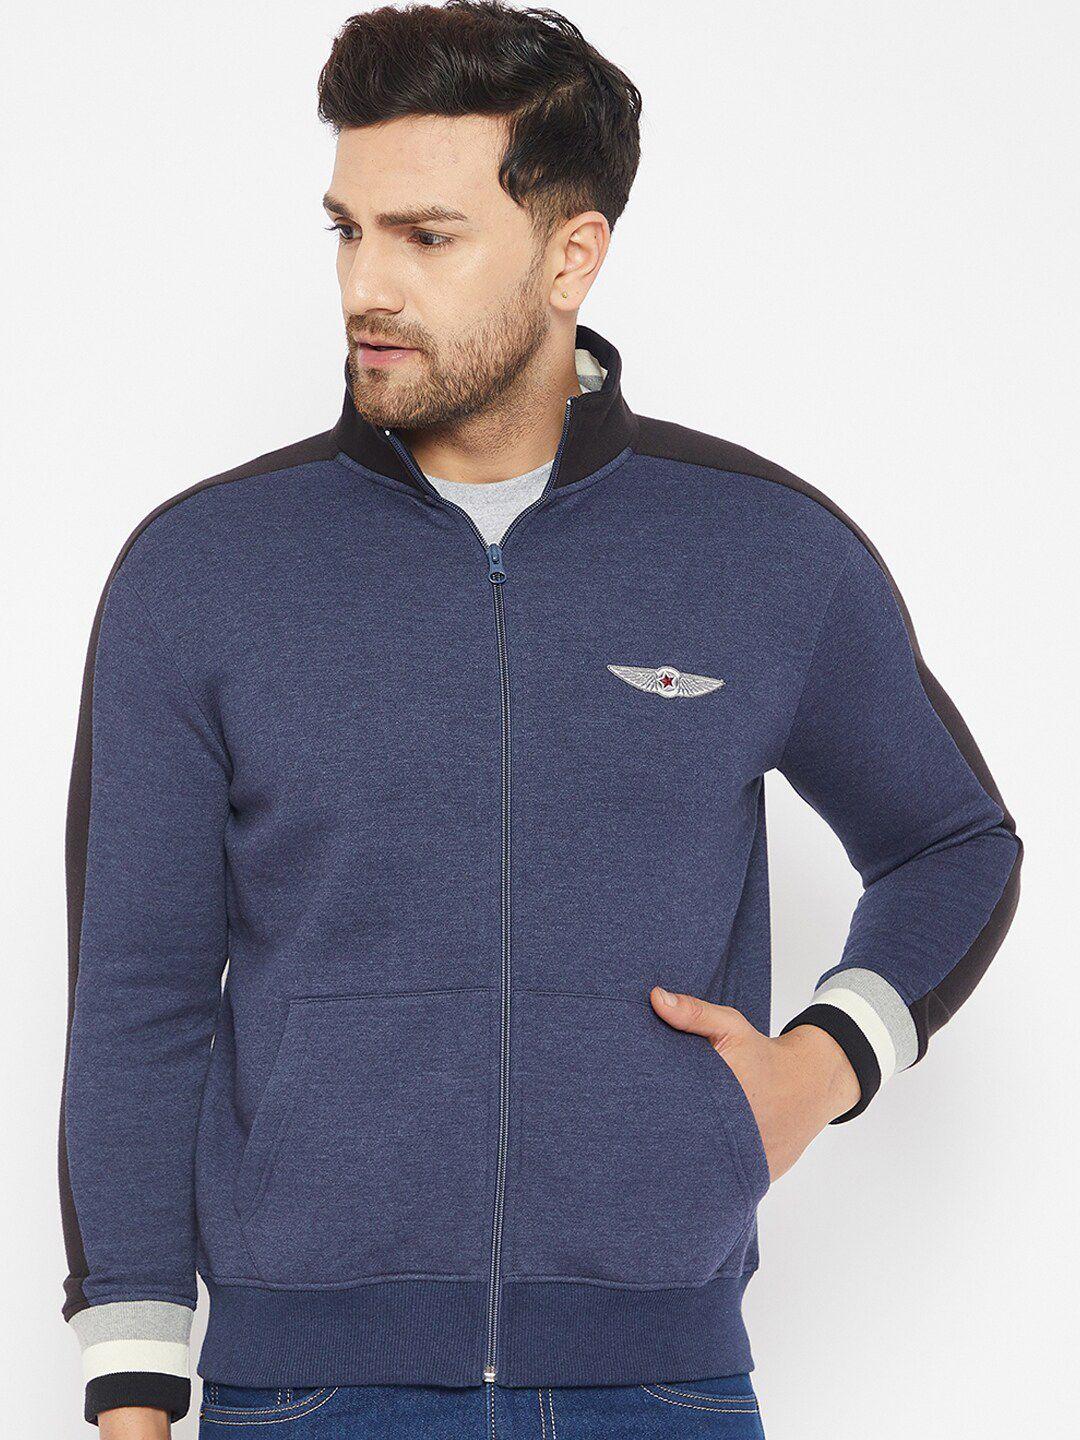 harbor-n-bay-men-blue-solid-front-open-high-neck-sweatshirt